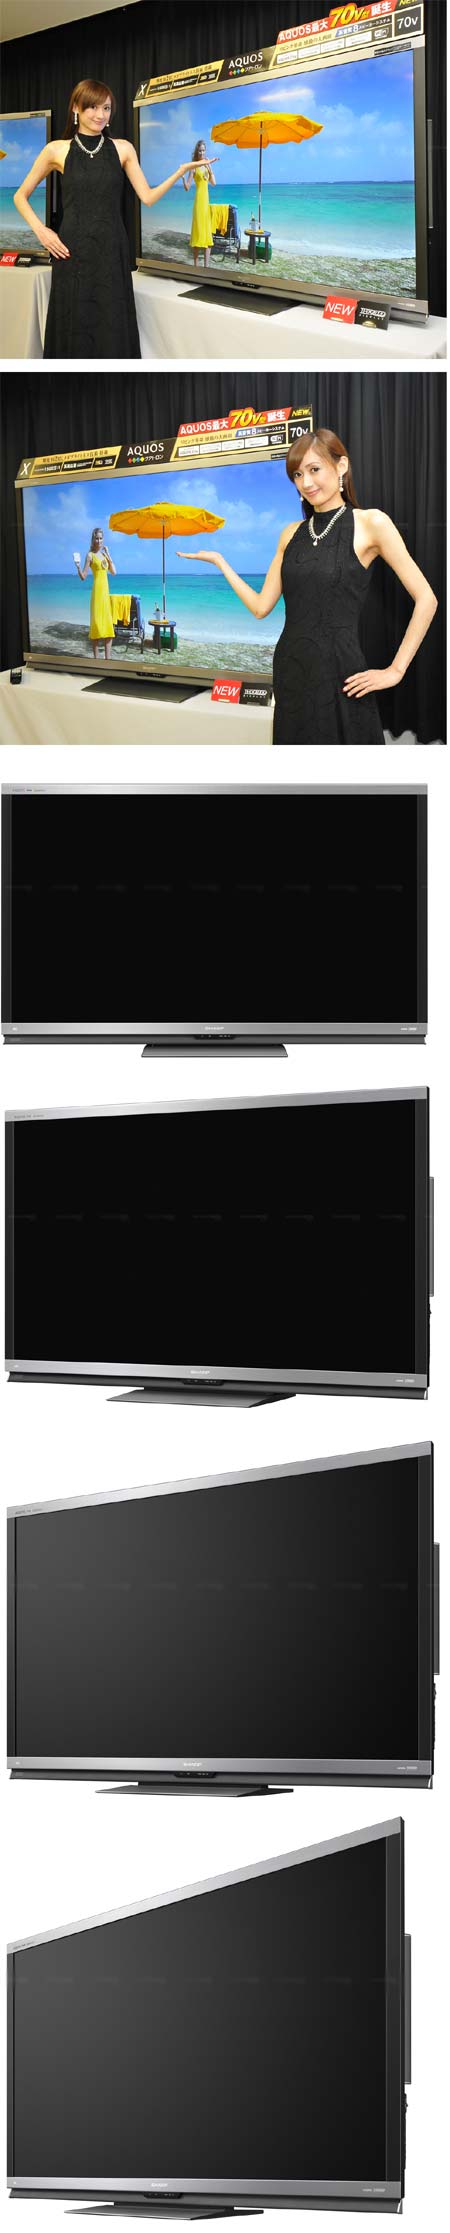 Новые телевизоры линейки AQUOS Quattron от Sharp - LC-70LE735U и LC-70X5